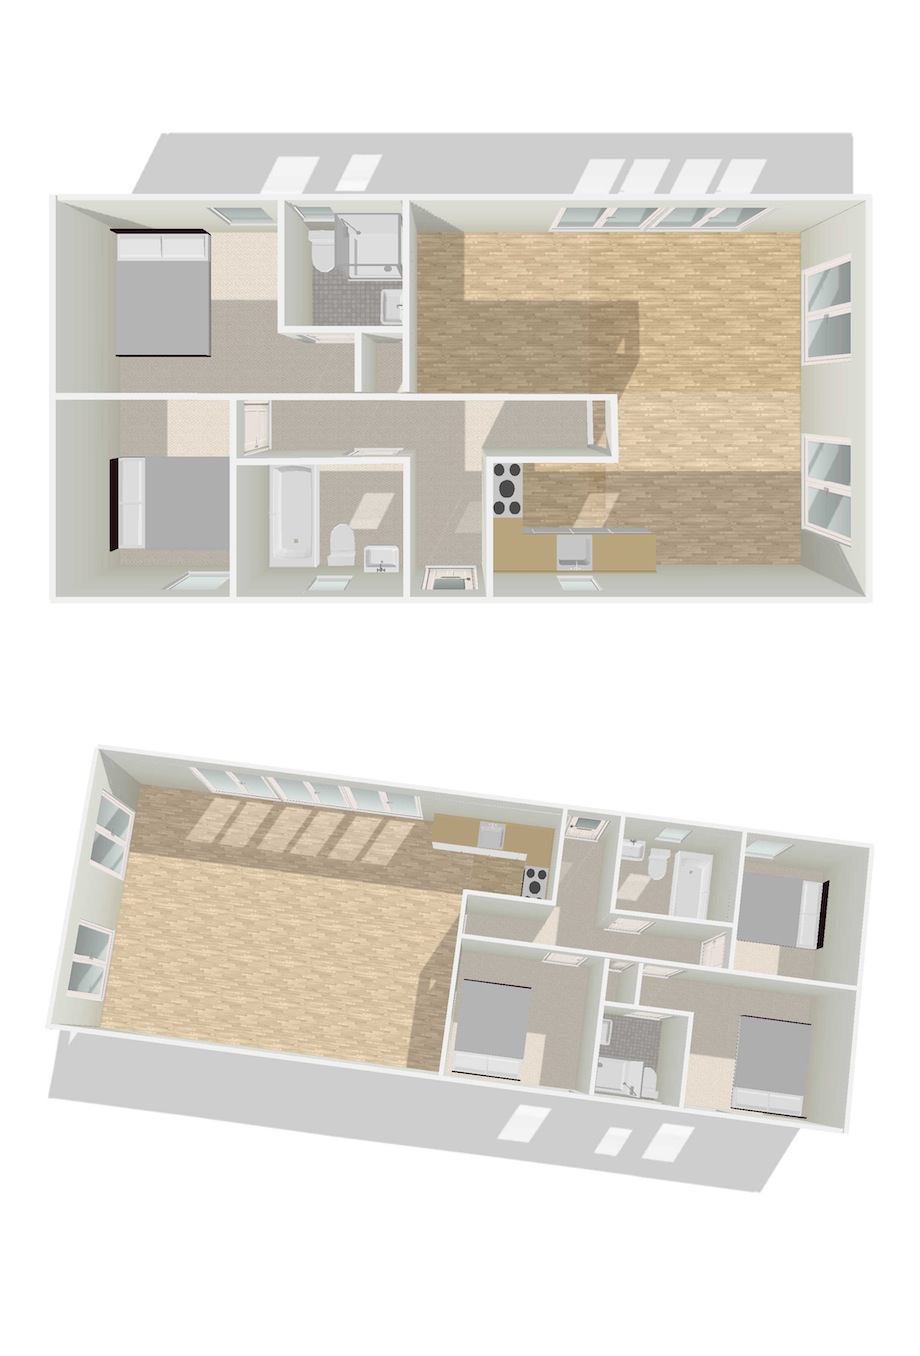 Mobile-Home-Floor-Plans-3d-p8